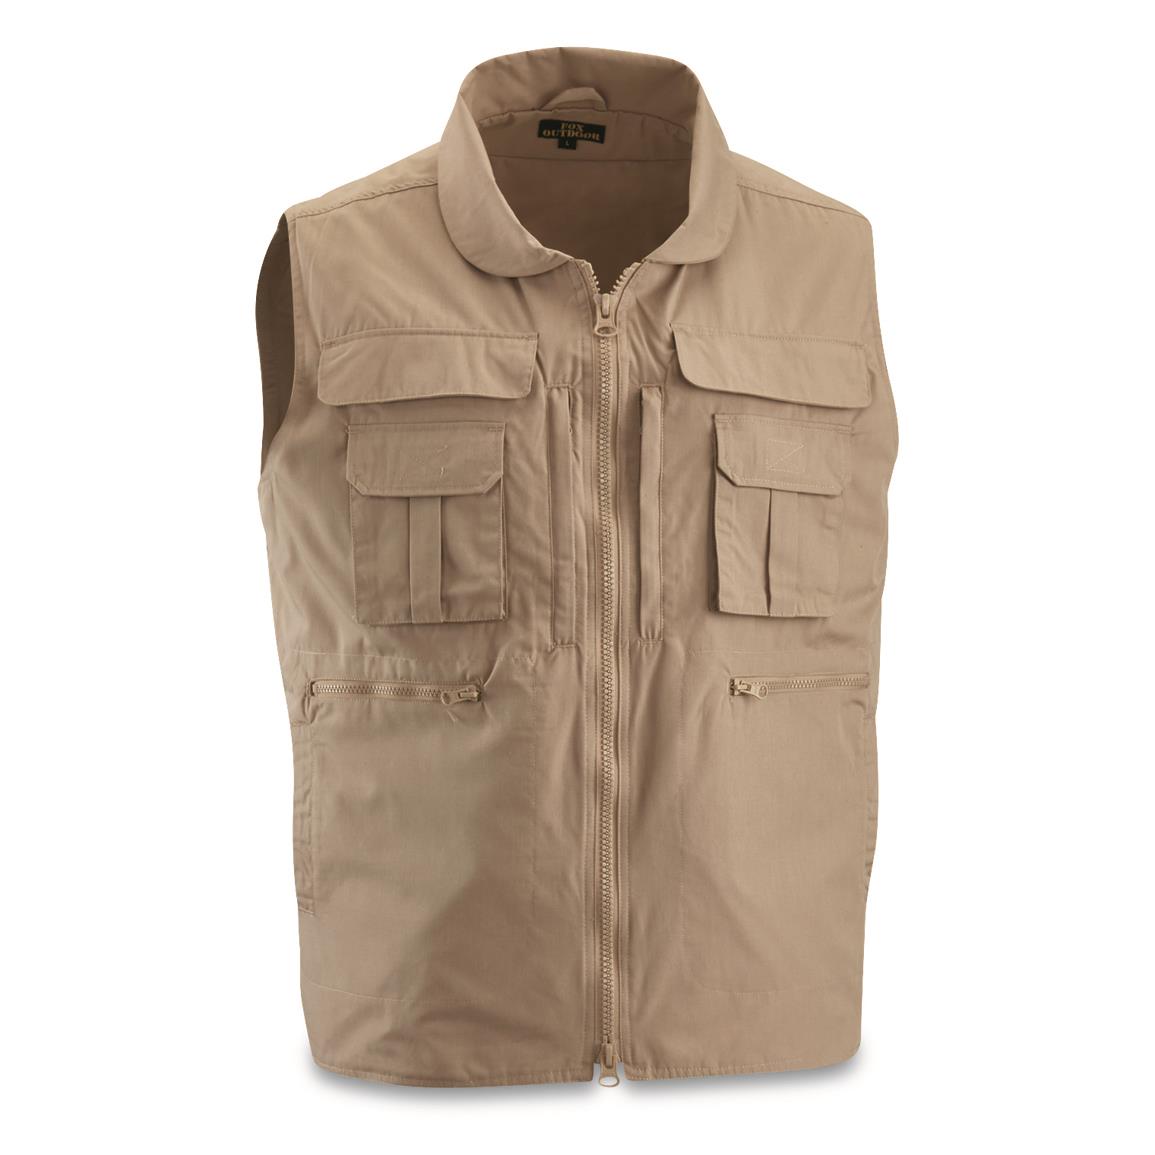 Fox Outdoors Viper Concealment Carry Vest, Khaki